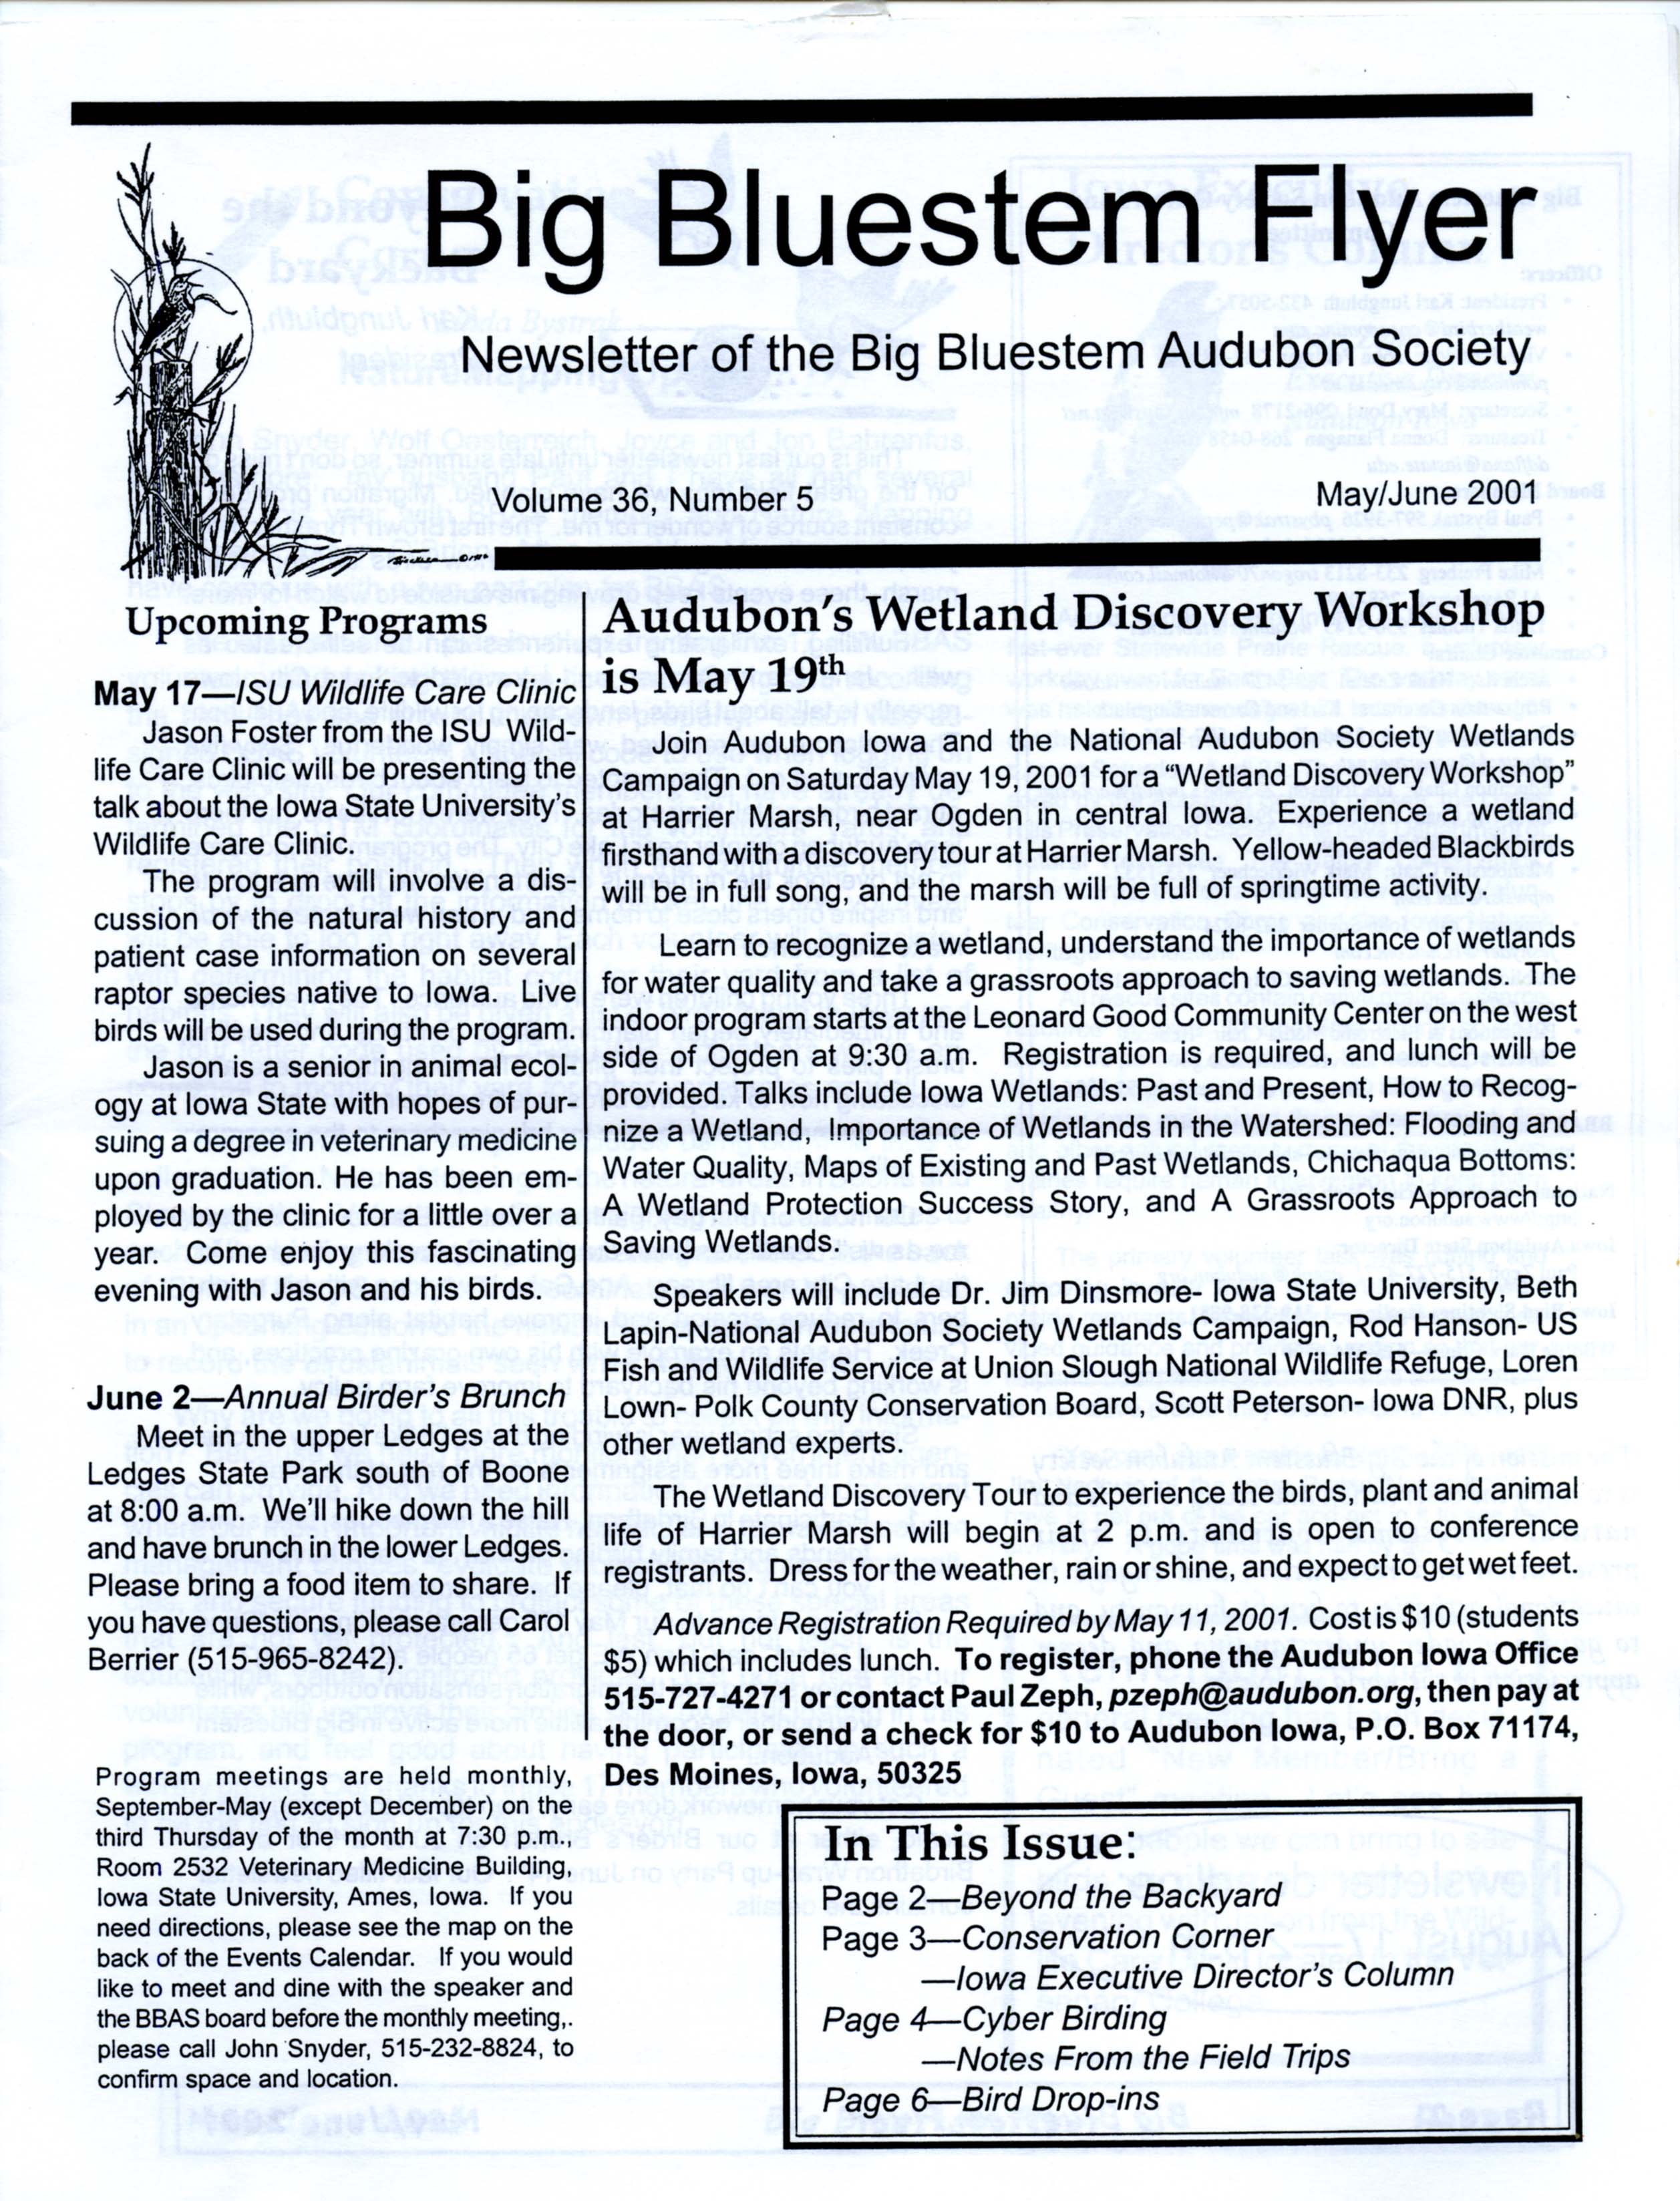 Big Bluestem Flyer, Volume 36, Number 5, May/June 2001